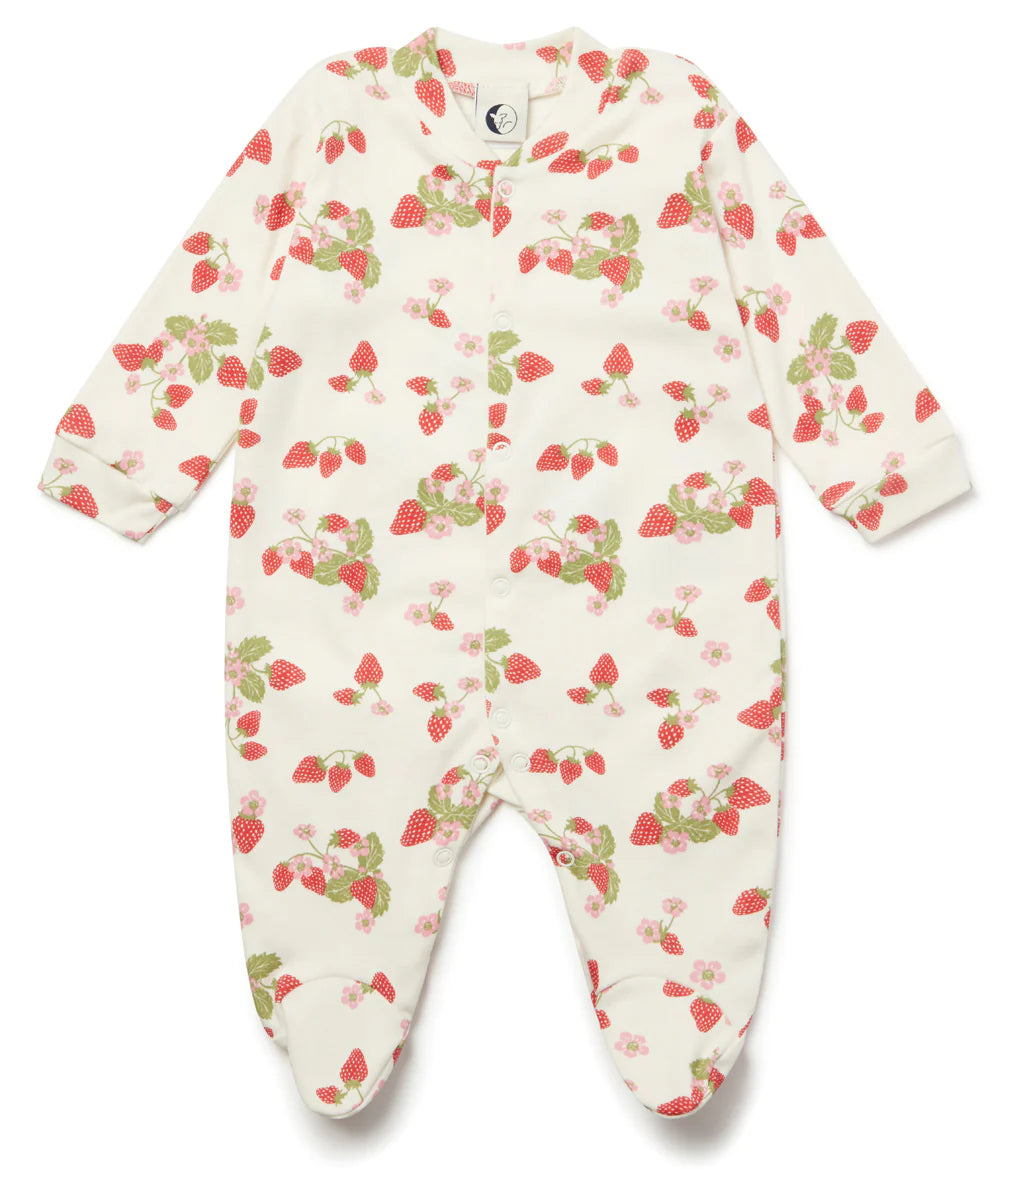 Sleepy Doe -Baby Sleepsuit- Strawberry